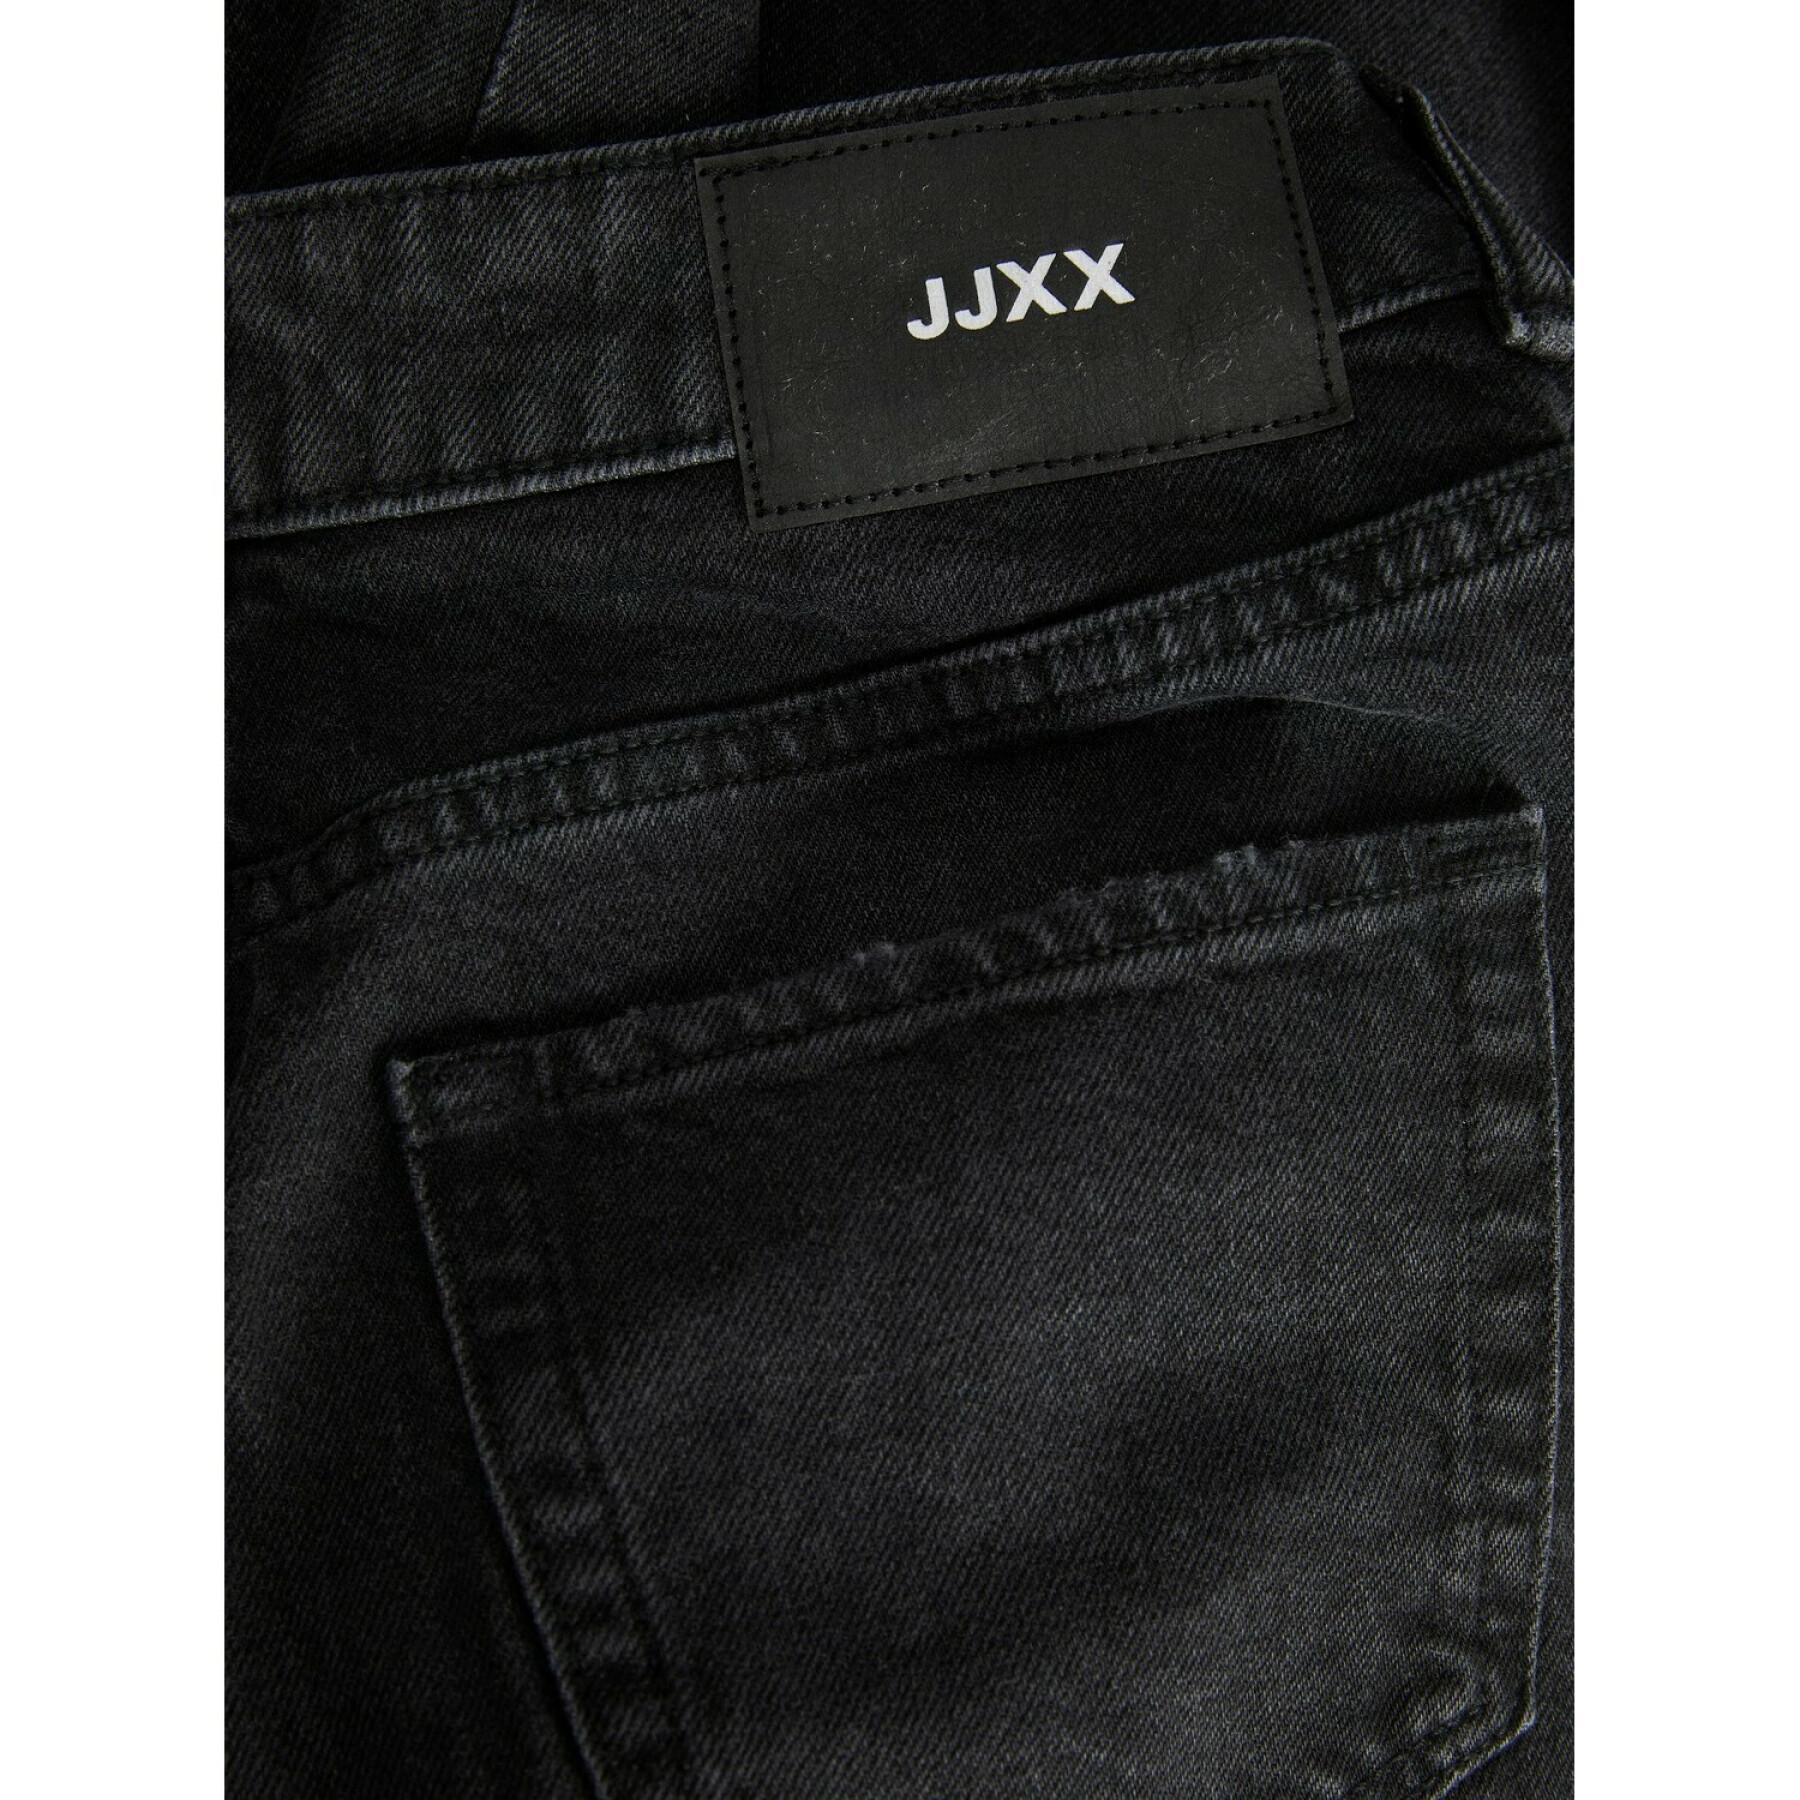 Jeans slim femme JJXX berlin nc2008